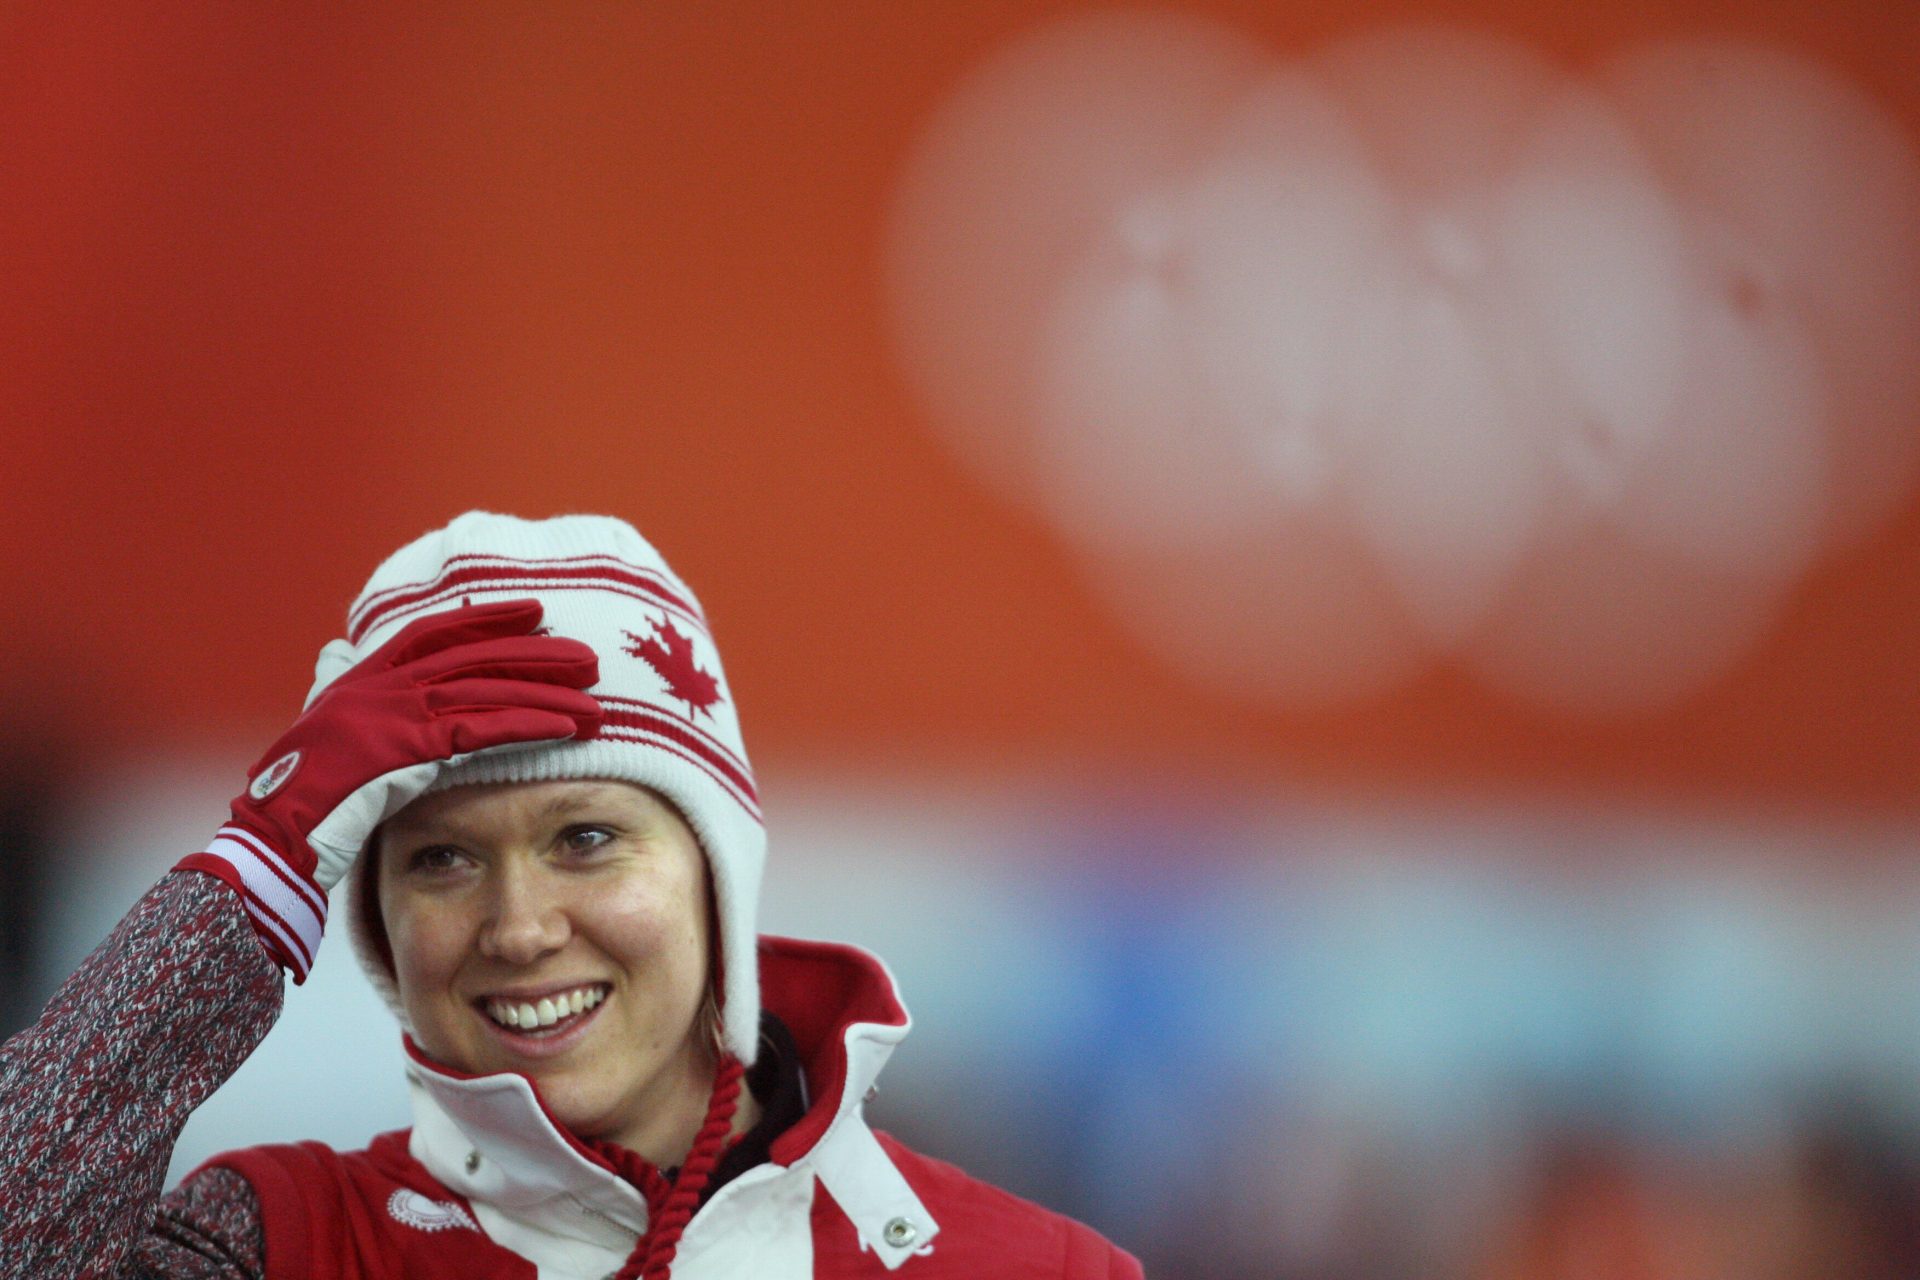 La revanche de Cindy Klassen, la hockeyeuse déchue devenue l'athlète canadienne la plus titrée aux Jeux Olympiques